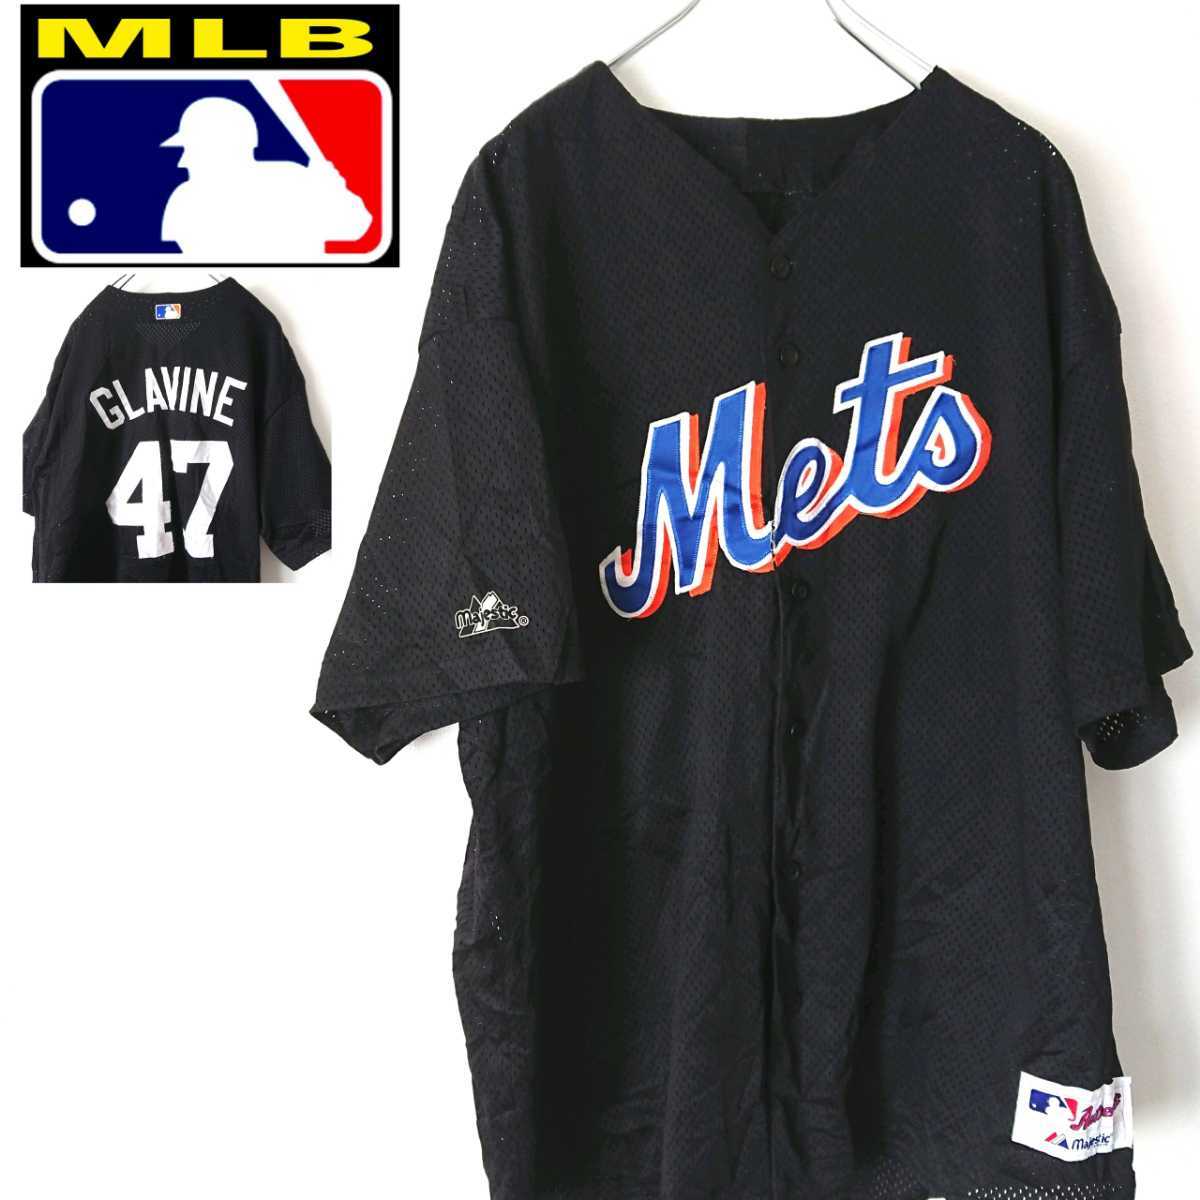 【名入れ無料】 New MLB York デカロゴ ビッグサイズ Tシャツ ゲームシャツ ベースボールシャツ 47 Glavineトム・グラビン Tom ニューヨークメッツ Mets 応援ユニフォーム、ウエア